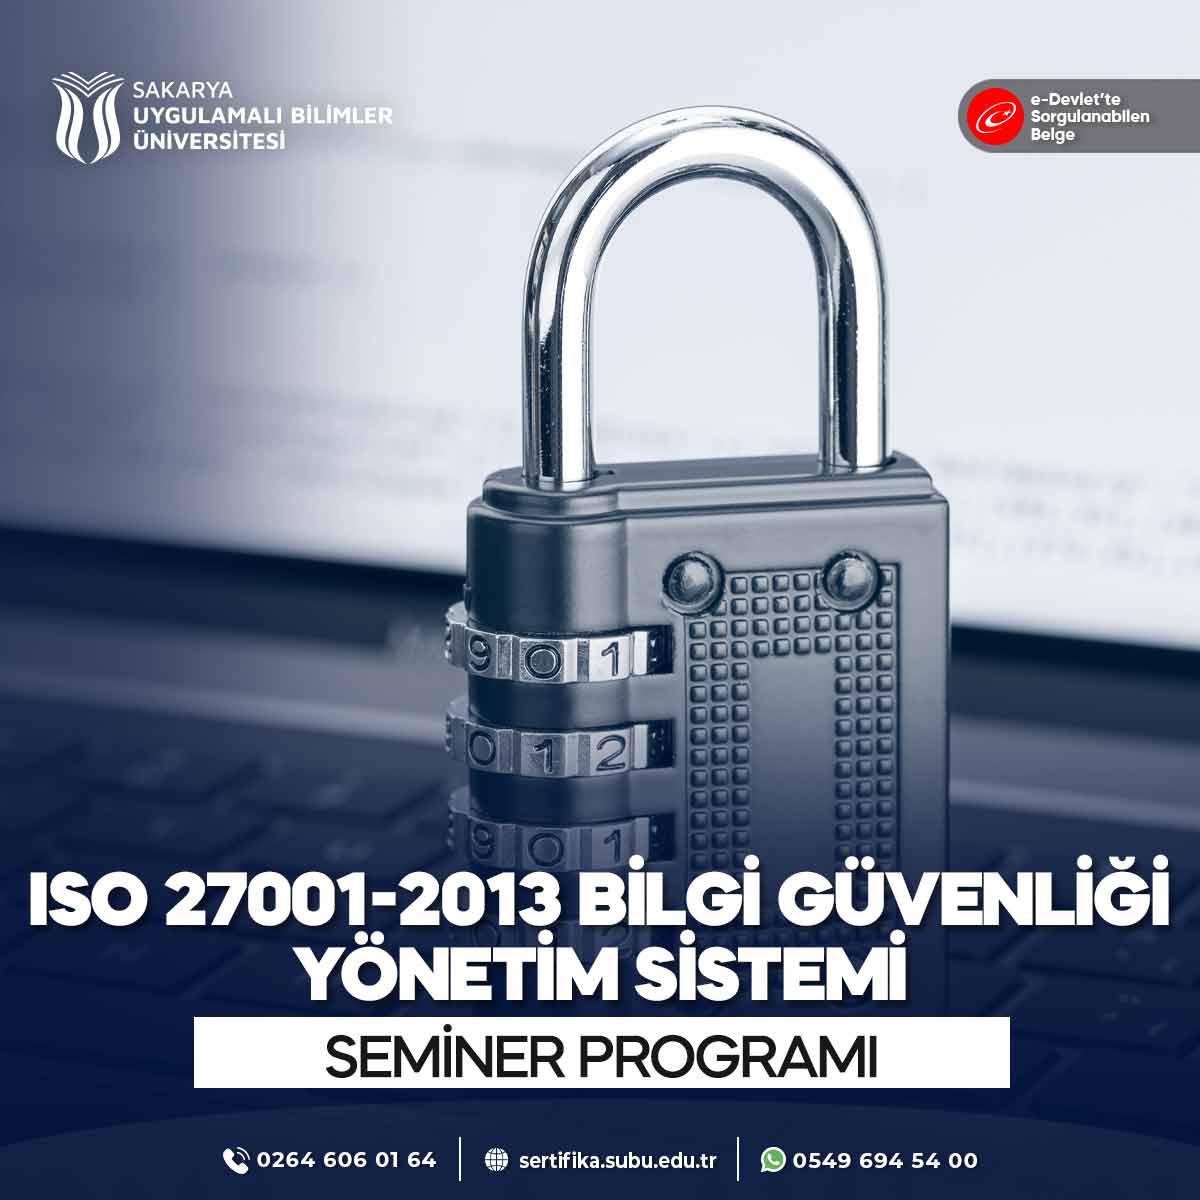 ISO 27001:2013 Bilgi Güvenliği Yönetim Sistemi Semineri